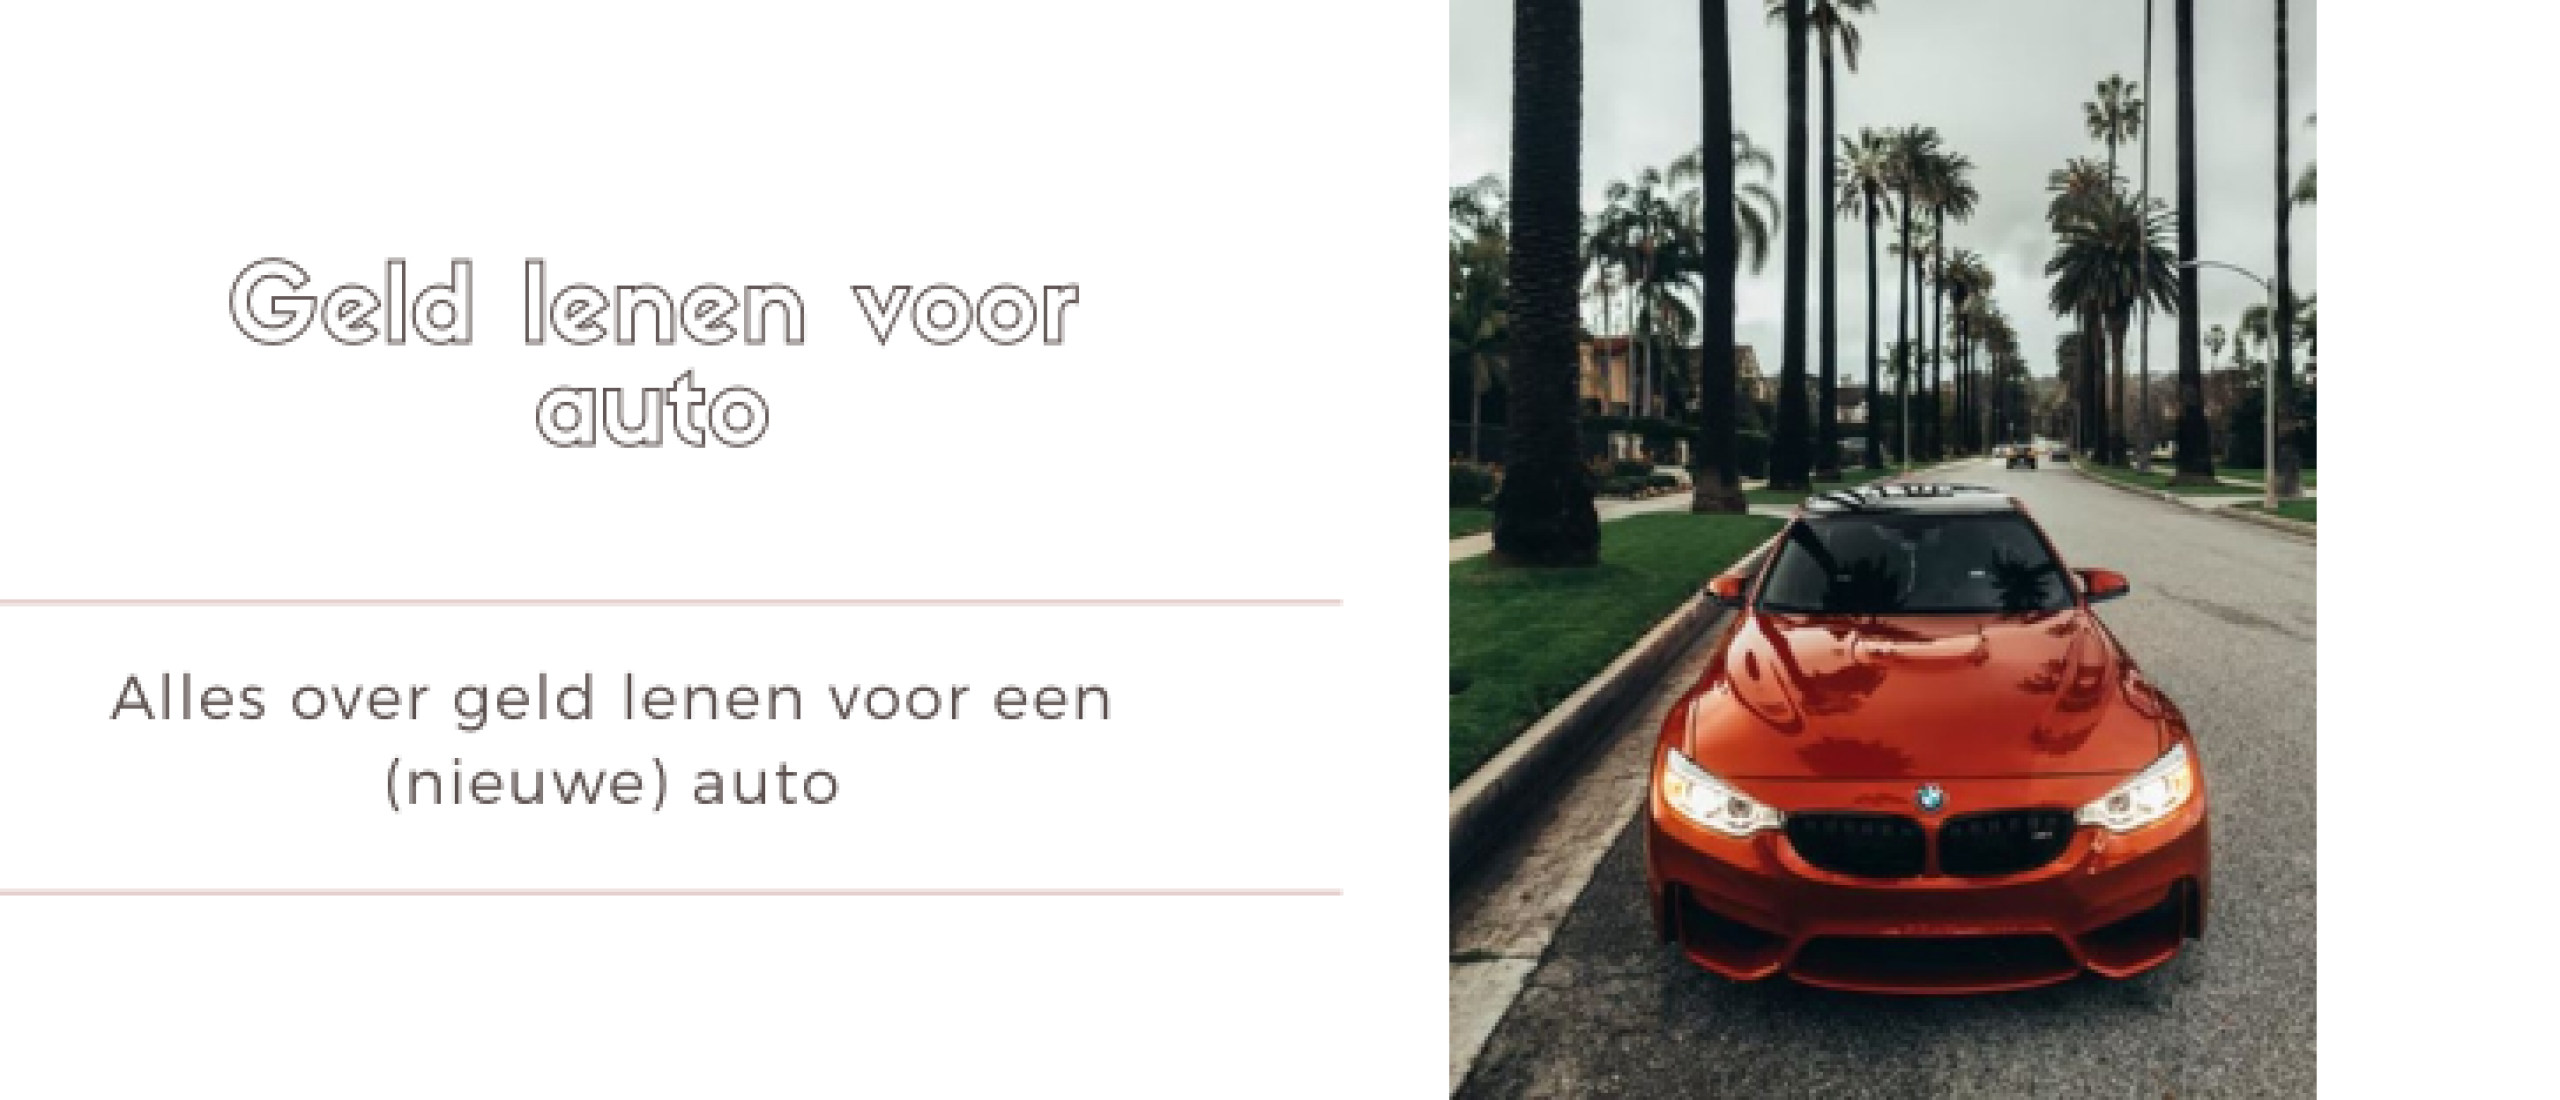 Geld Lenen voor Auto / Autolening? Opties en Vergelijk | Minilening.nl